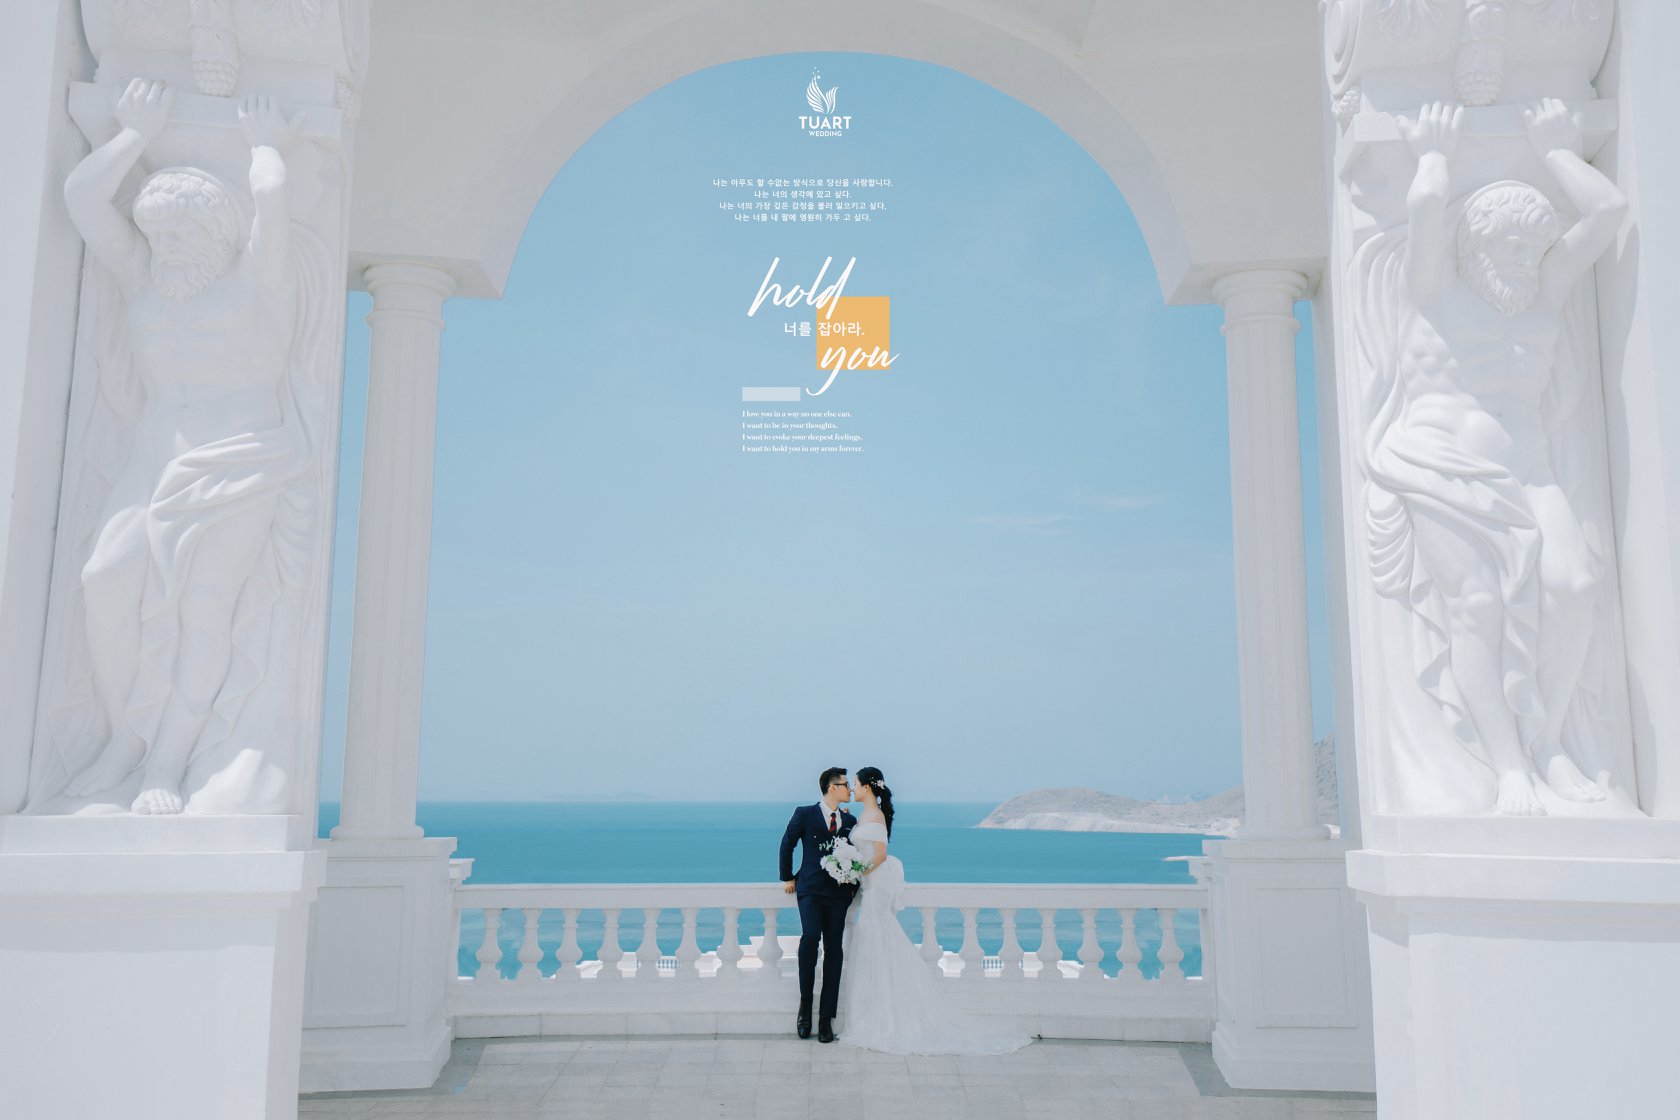 Báo giá chụp hình cưới tại Nha Trang